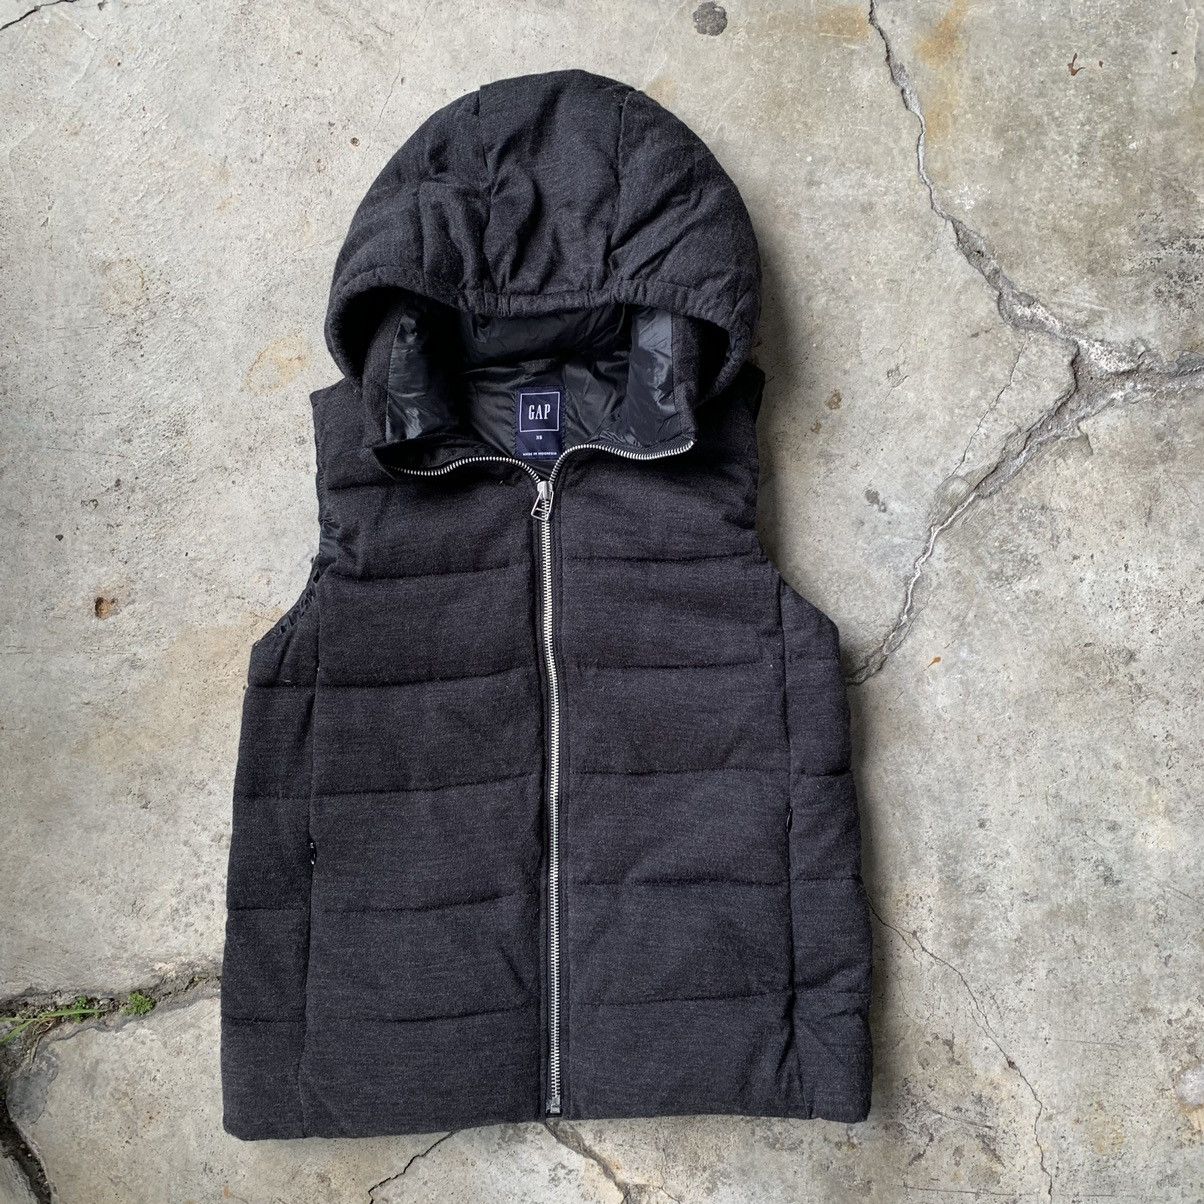 Gap Gap black hoodie vest Size US XS / EU 42 / 0 - 3 Thumbnail